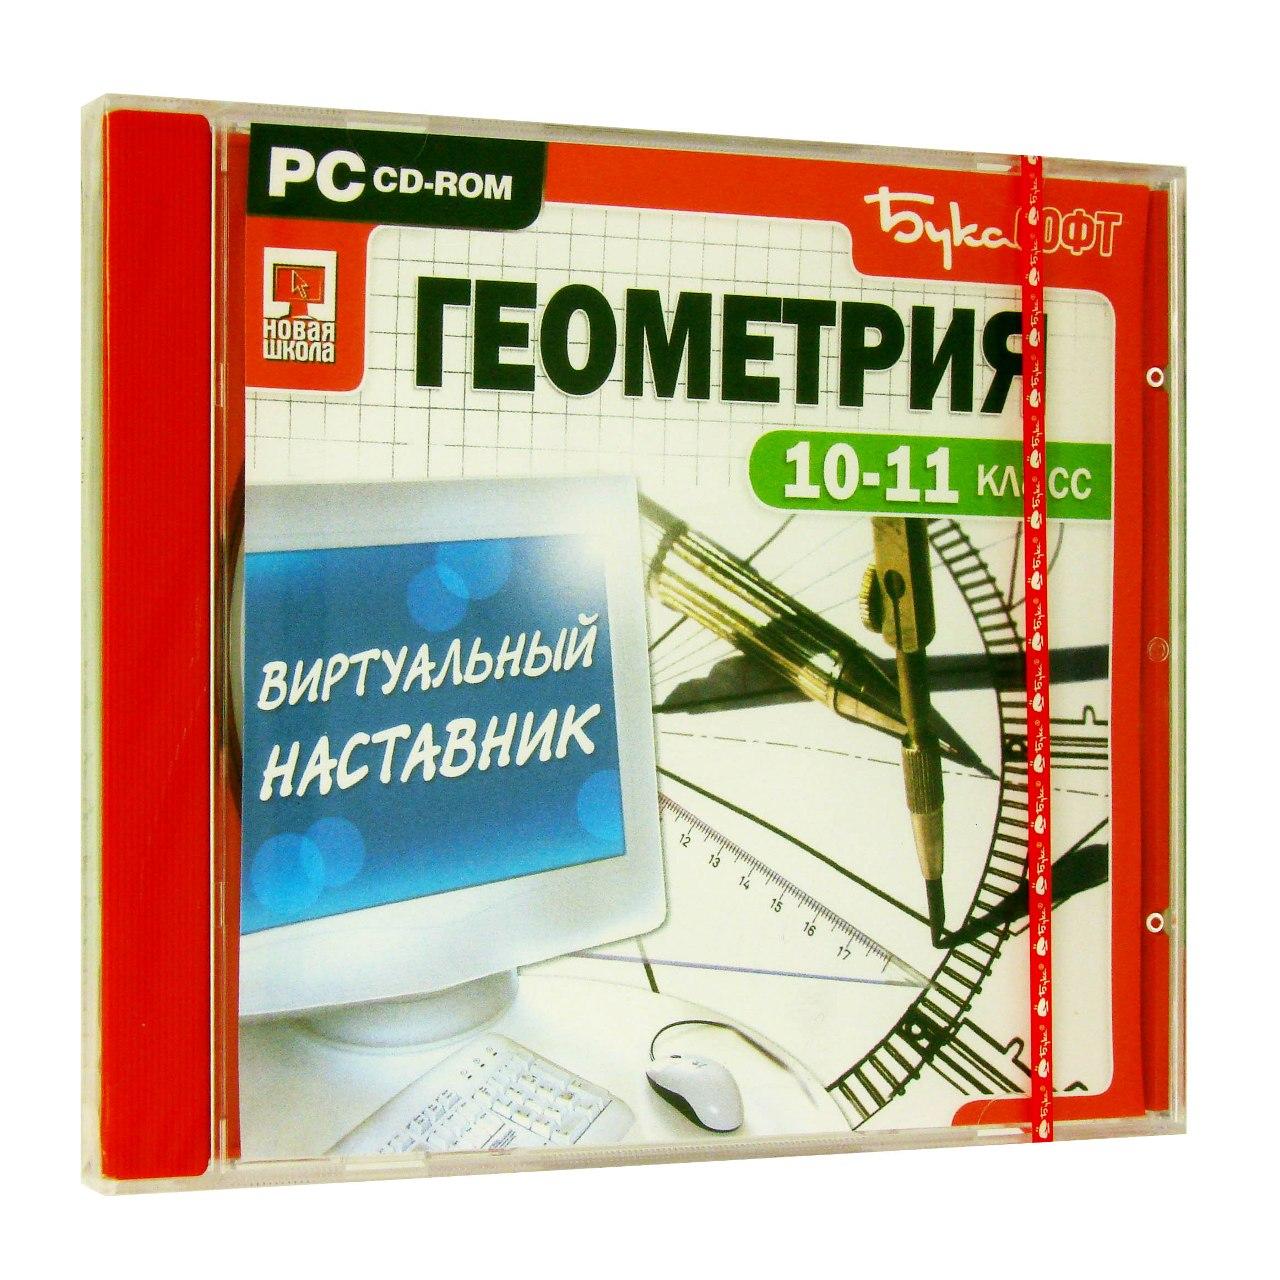 Компьютерный компакт-диск Виртуальный наставник. Геометрия 10-11 класс (ПК), фирма "Бука",  1CD